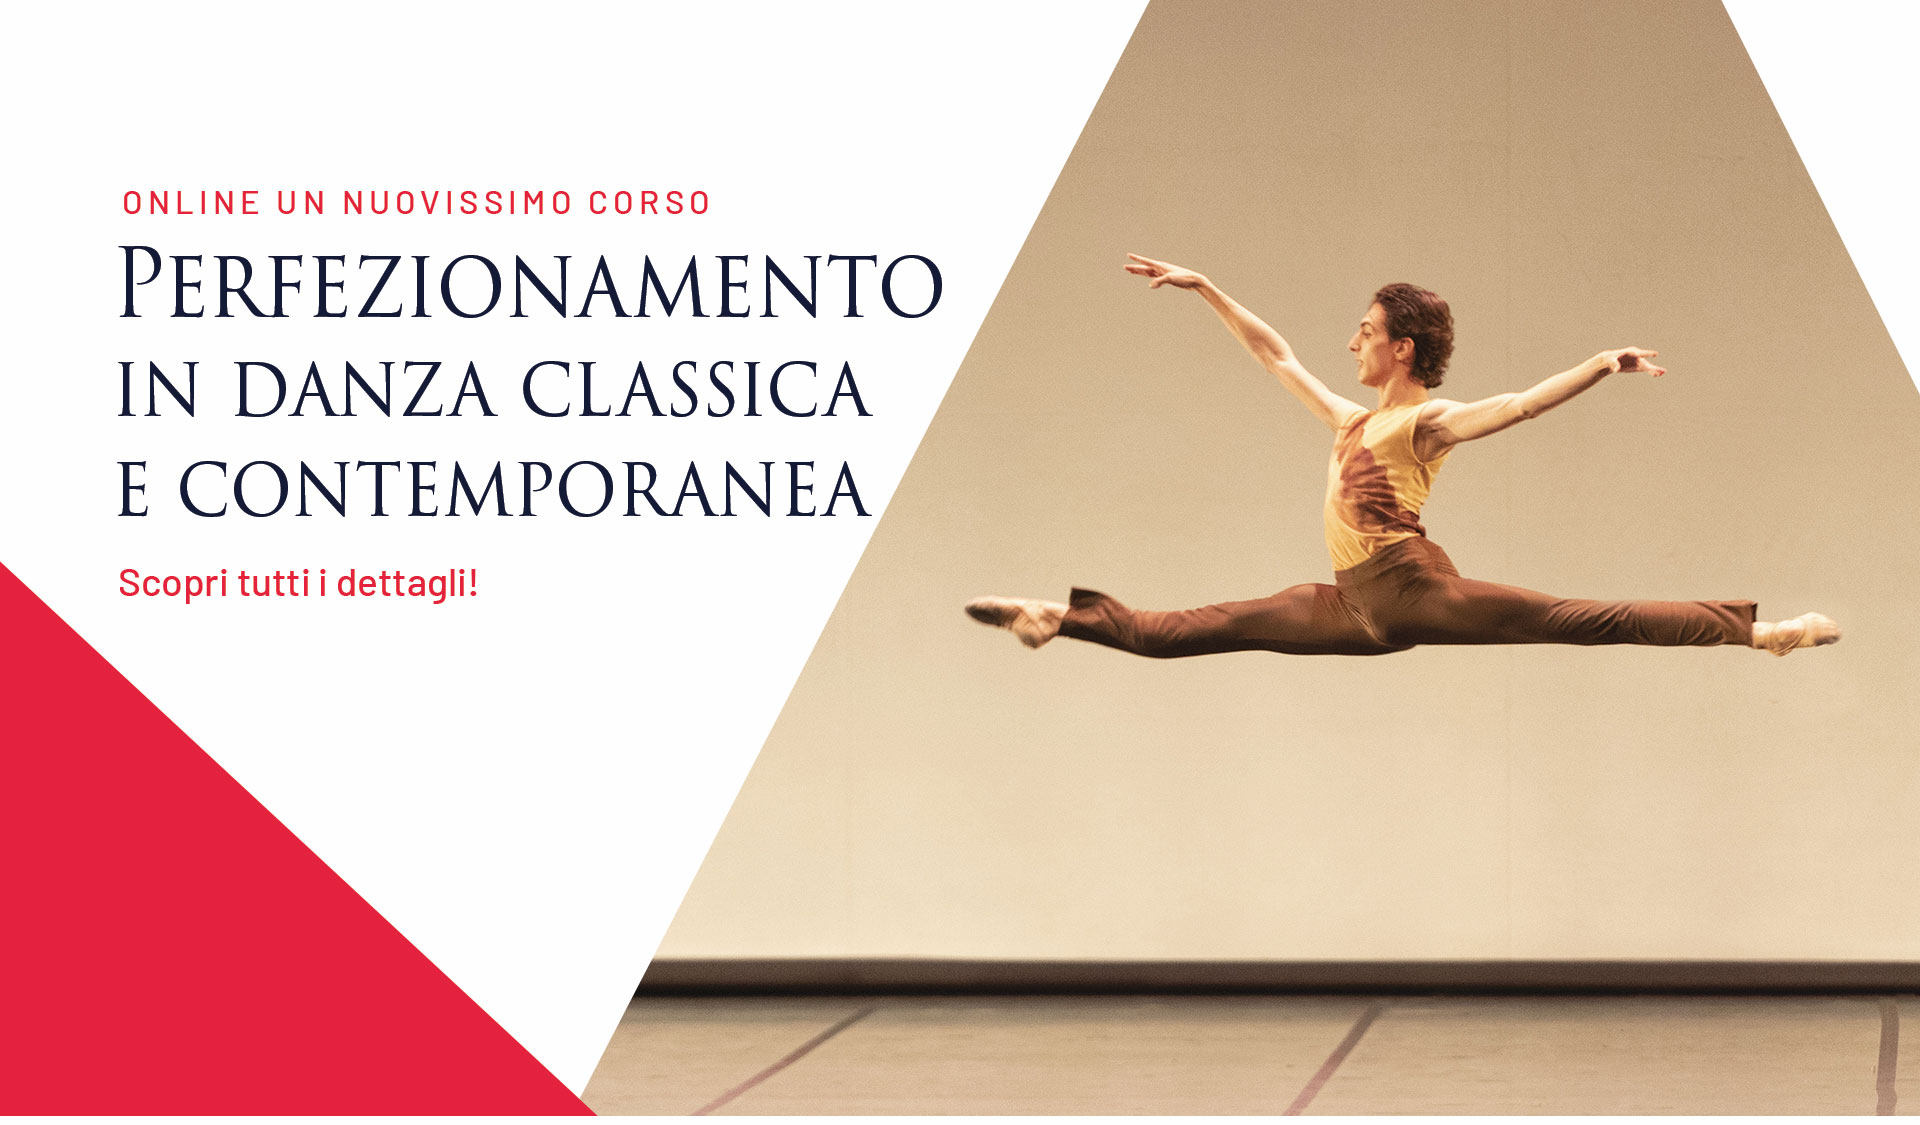 pubblicità nuovo corso di perfezionamento in danza classica e contemporanea